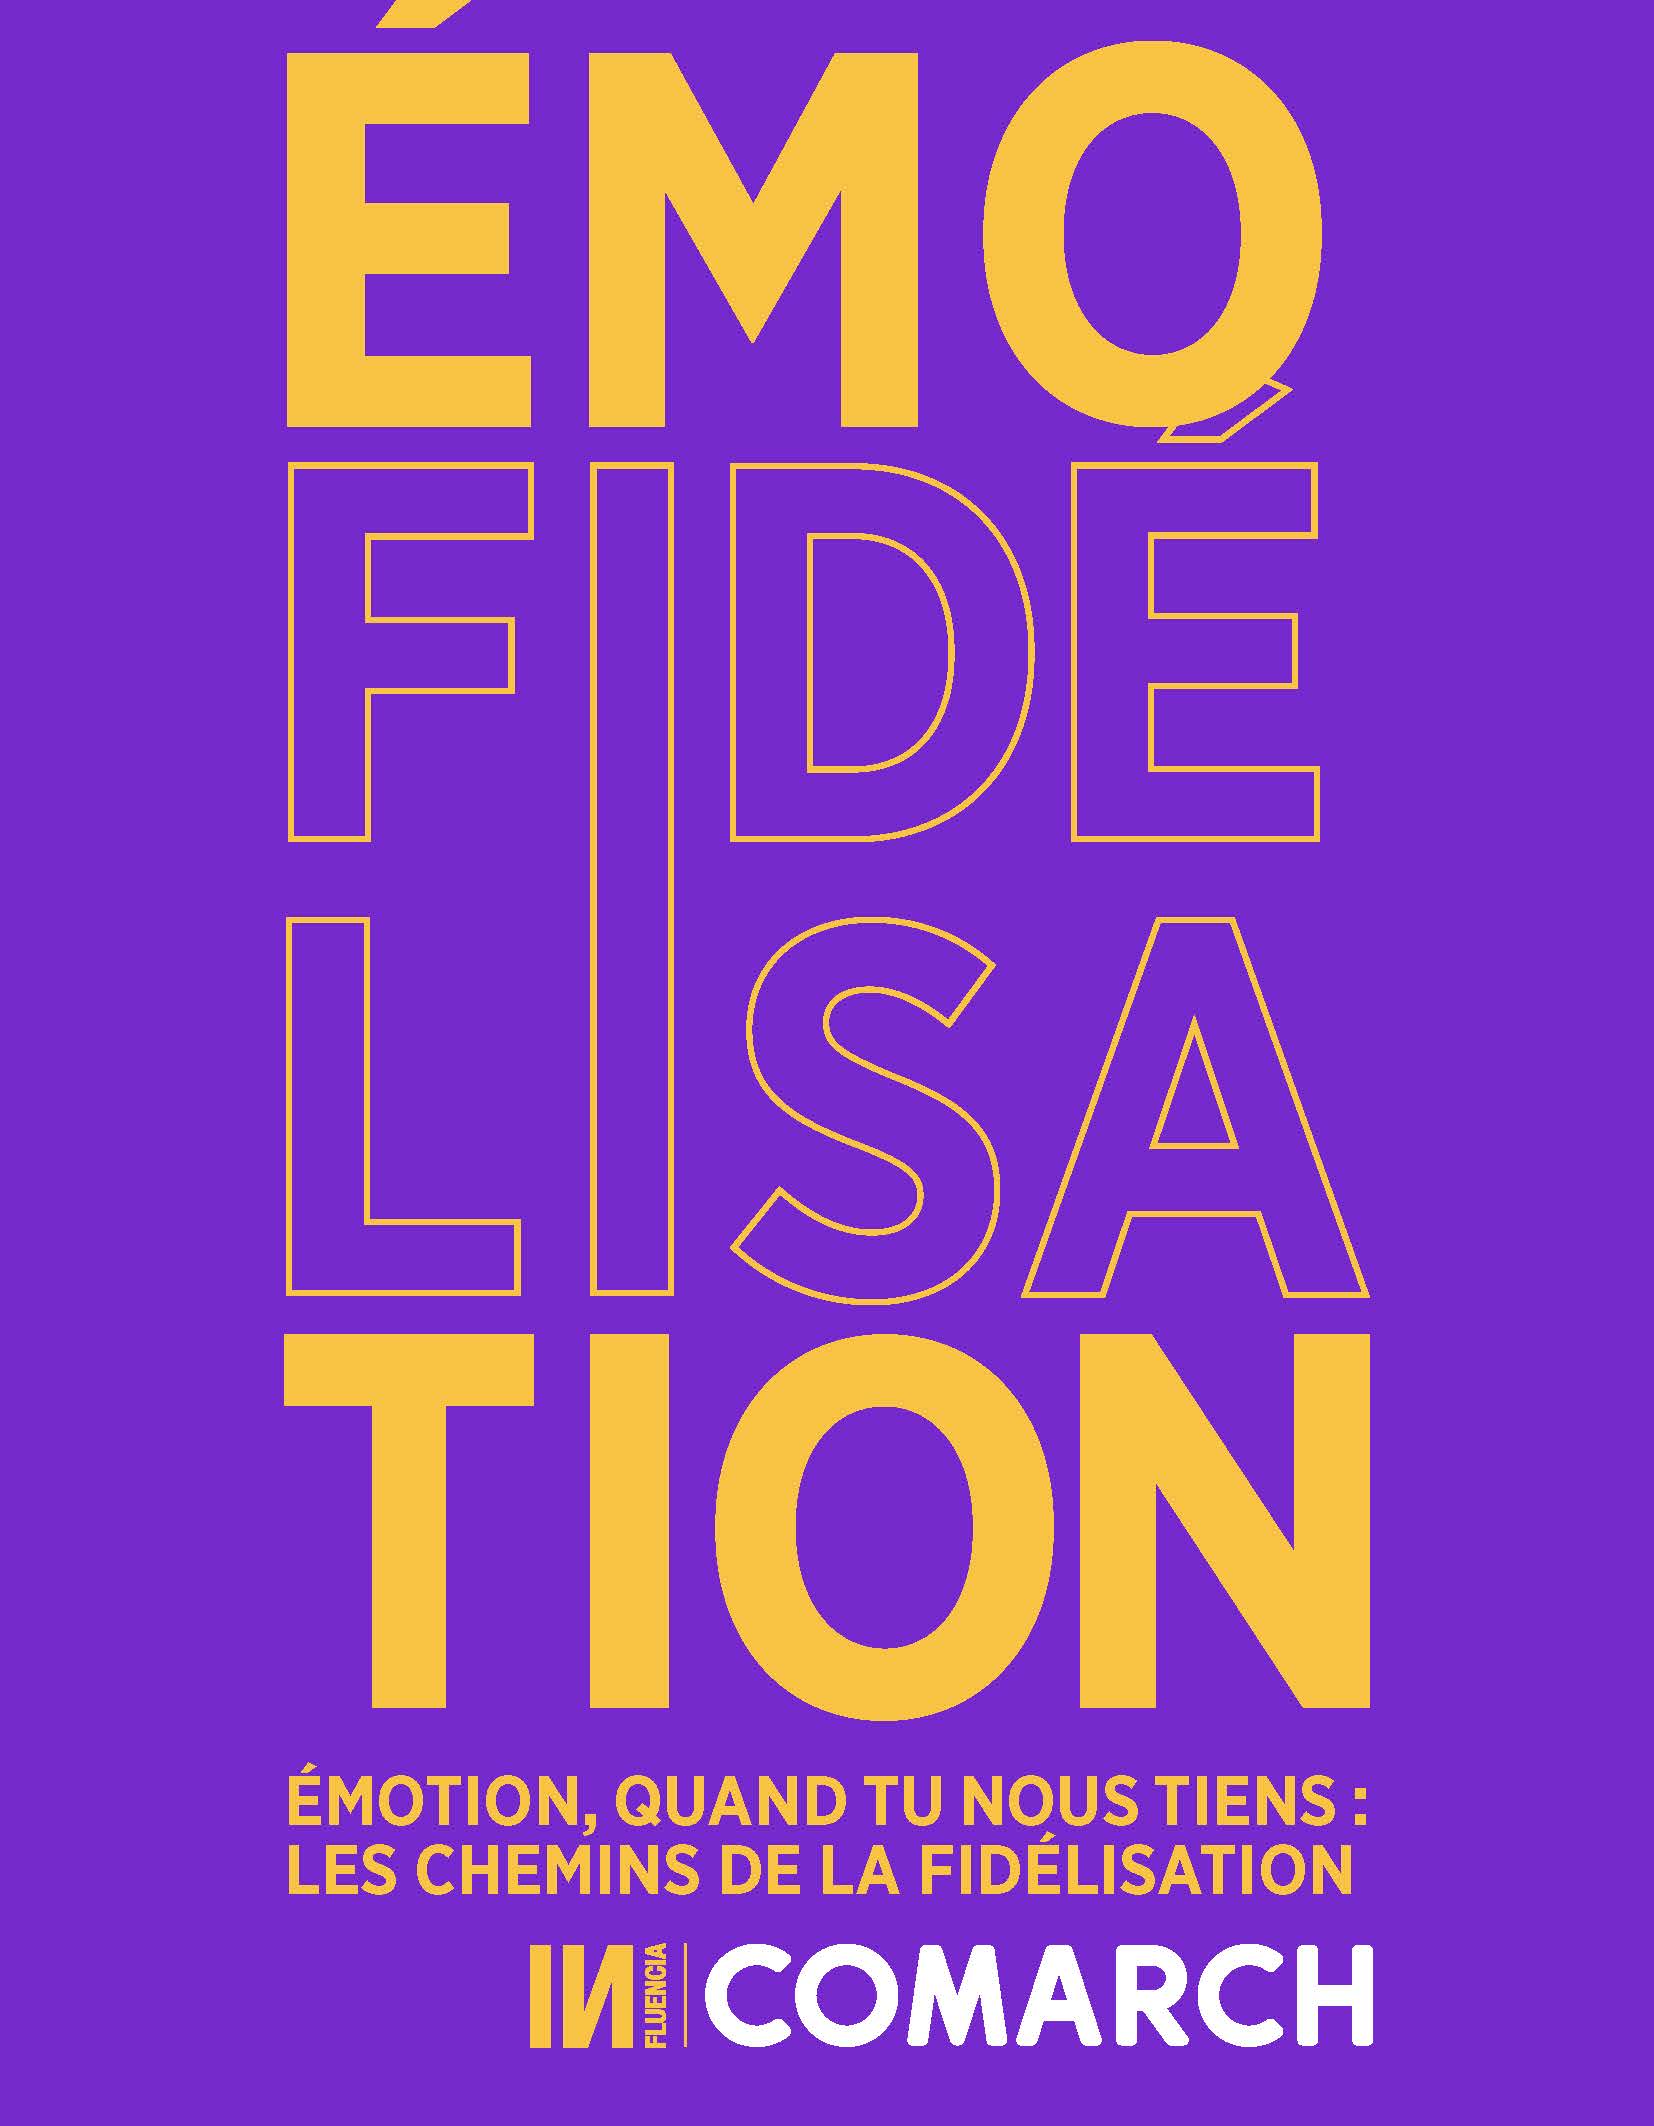 Influencia - Emotion et fidélisation